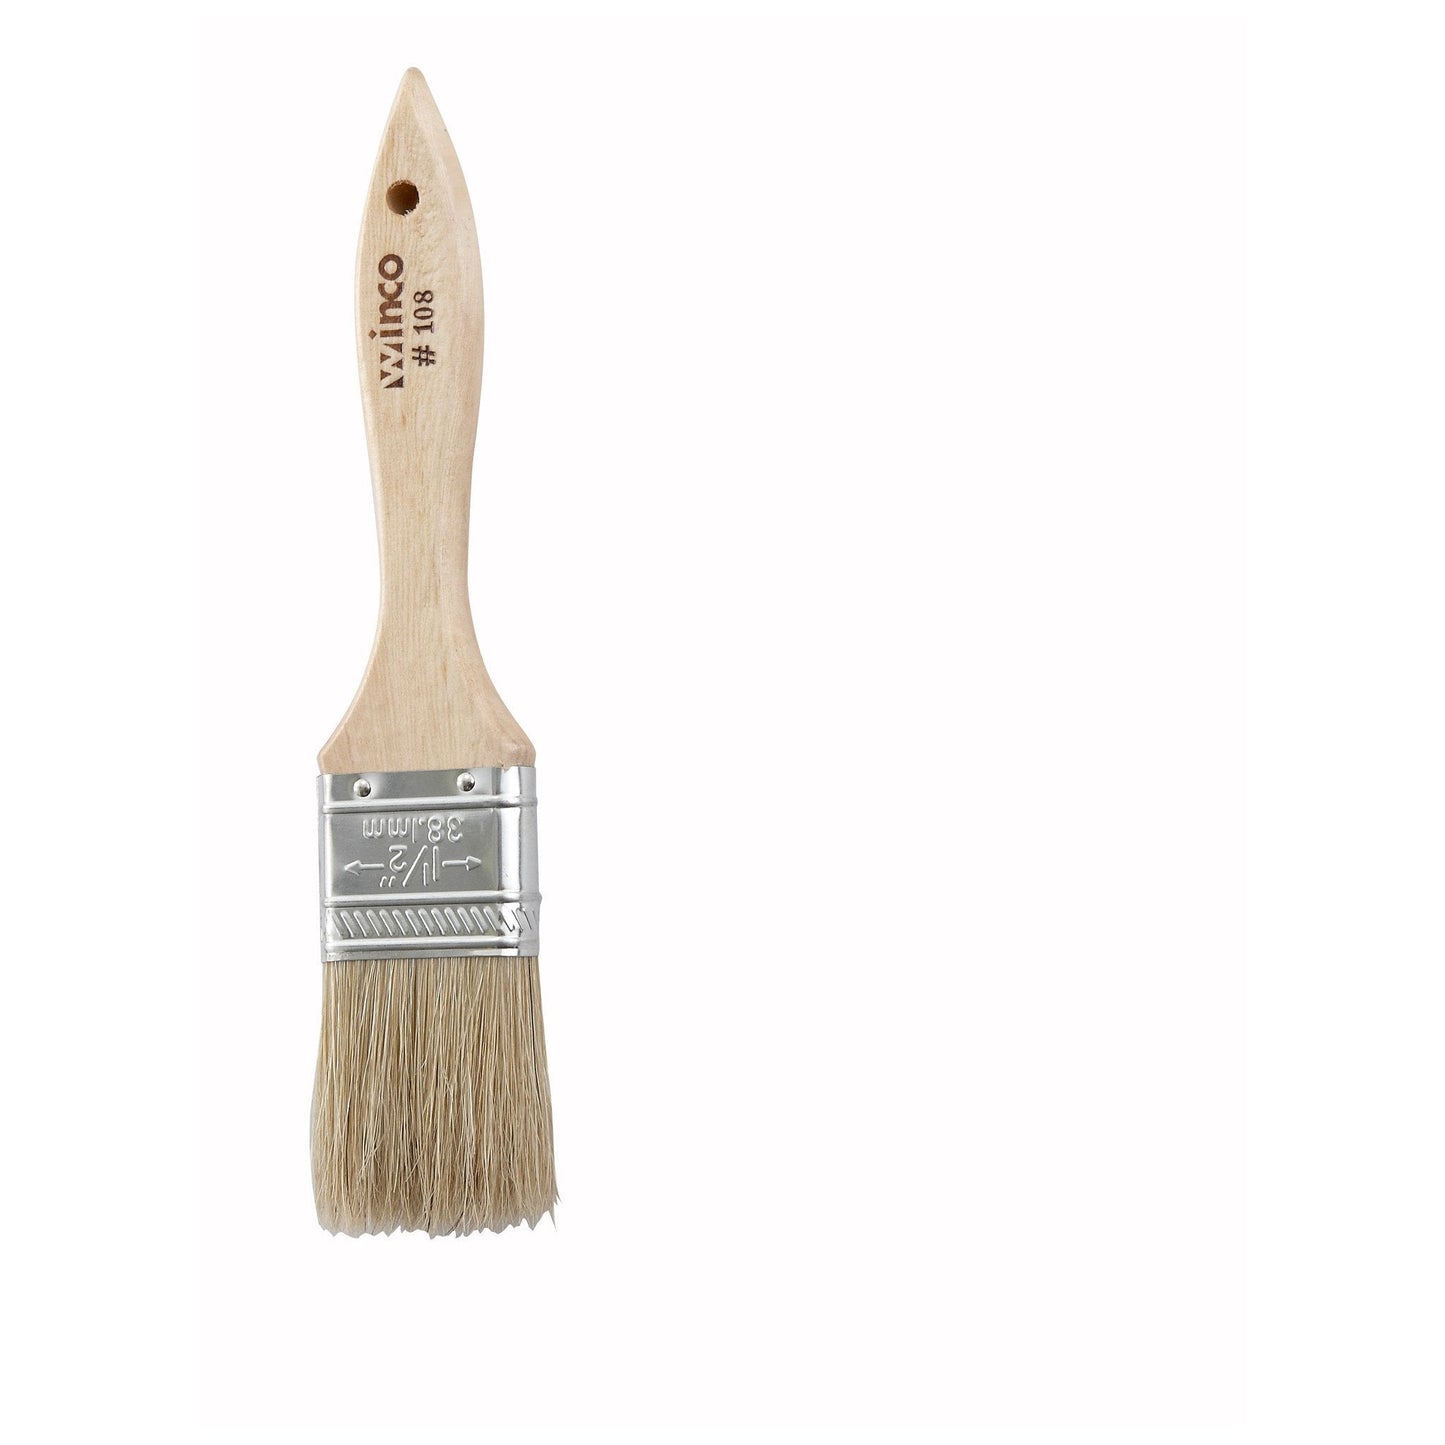 Pastry Brush/Basting Brush - Natural Boar Hair (Metal Ferrule) - Flat - 1.5"